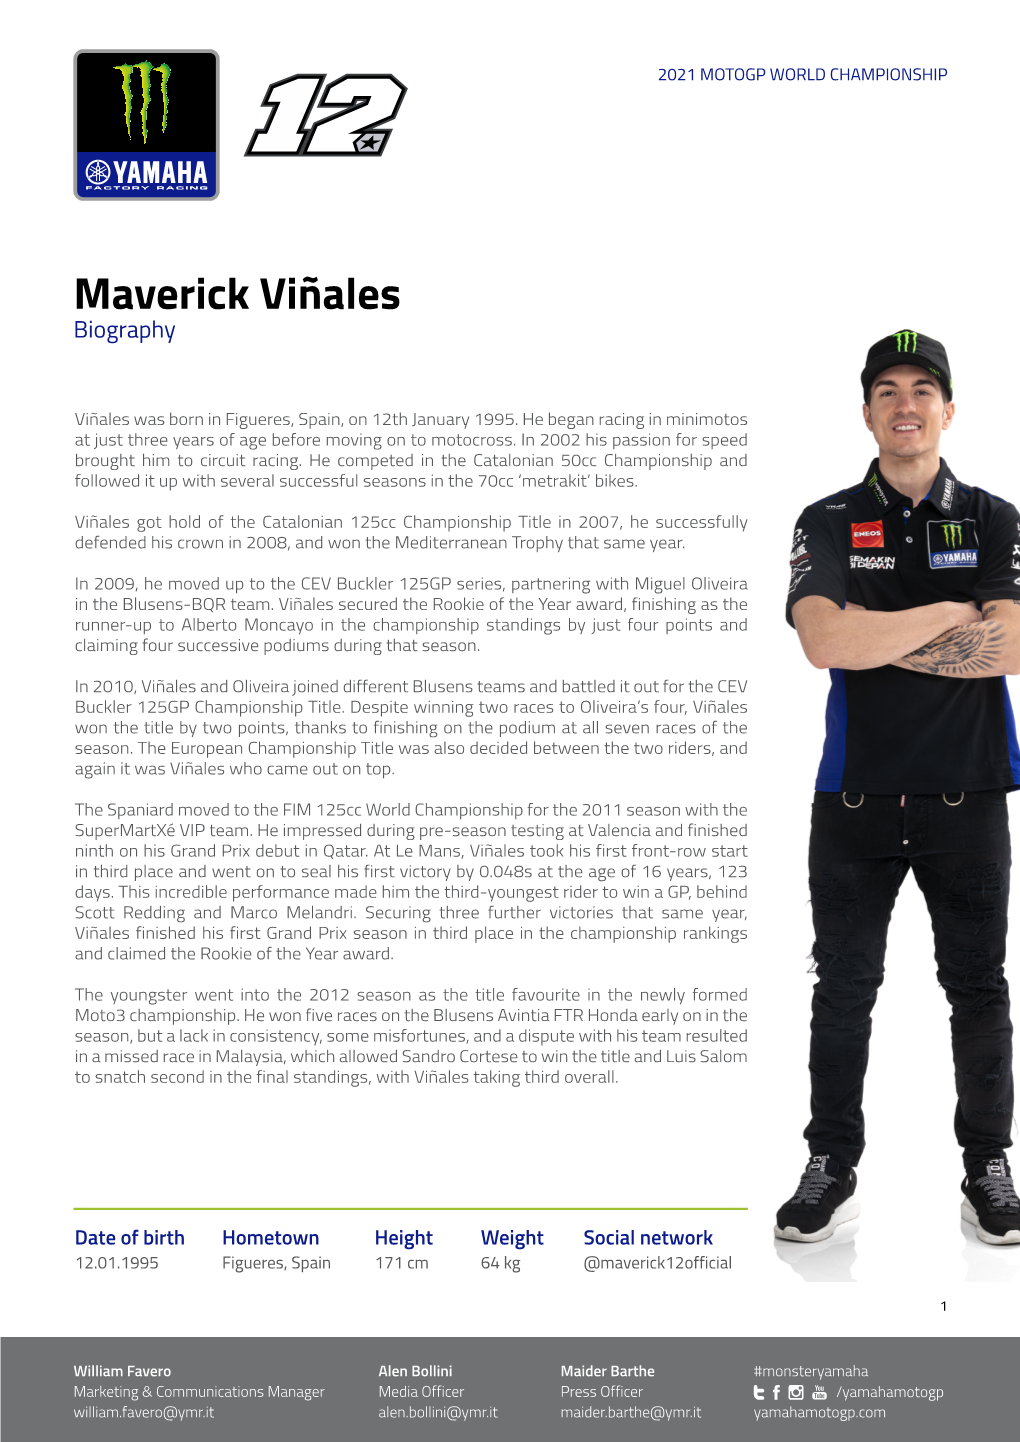 Maverick Viñales Biography